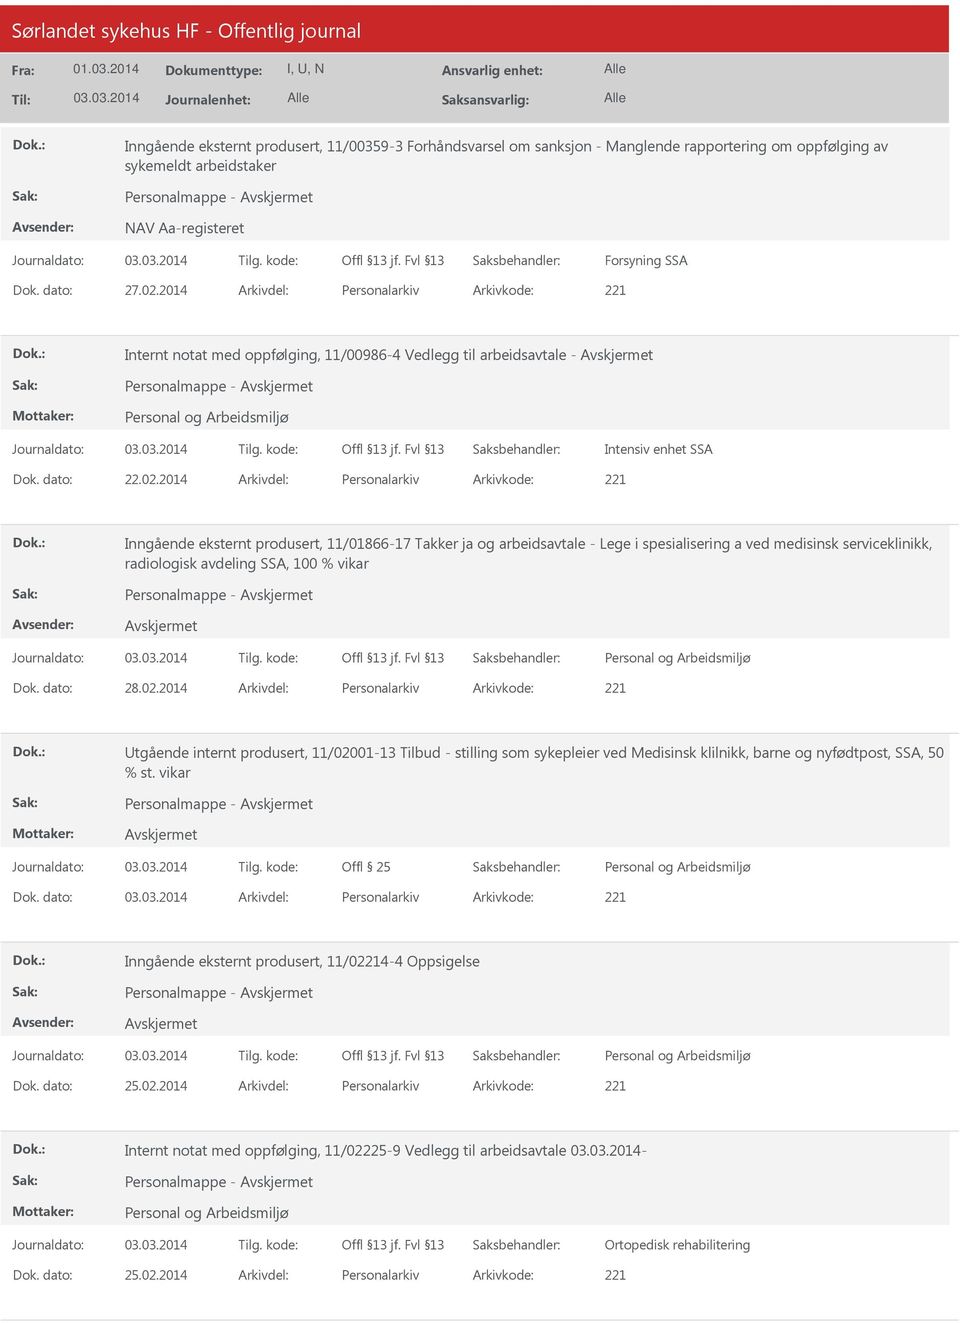 2014 Arkivdel: Personalarkiv Arkivkode: 221 Inngående eksternt produsert, 11/01866-17 Takker ja og arbeidsavtale - Lege i spesialisering a ved medisinsk serviceklinikk, radiologisk avdeling SSA, 100